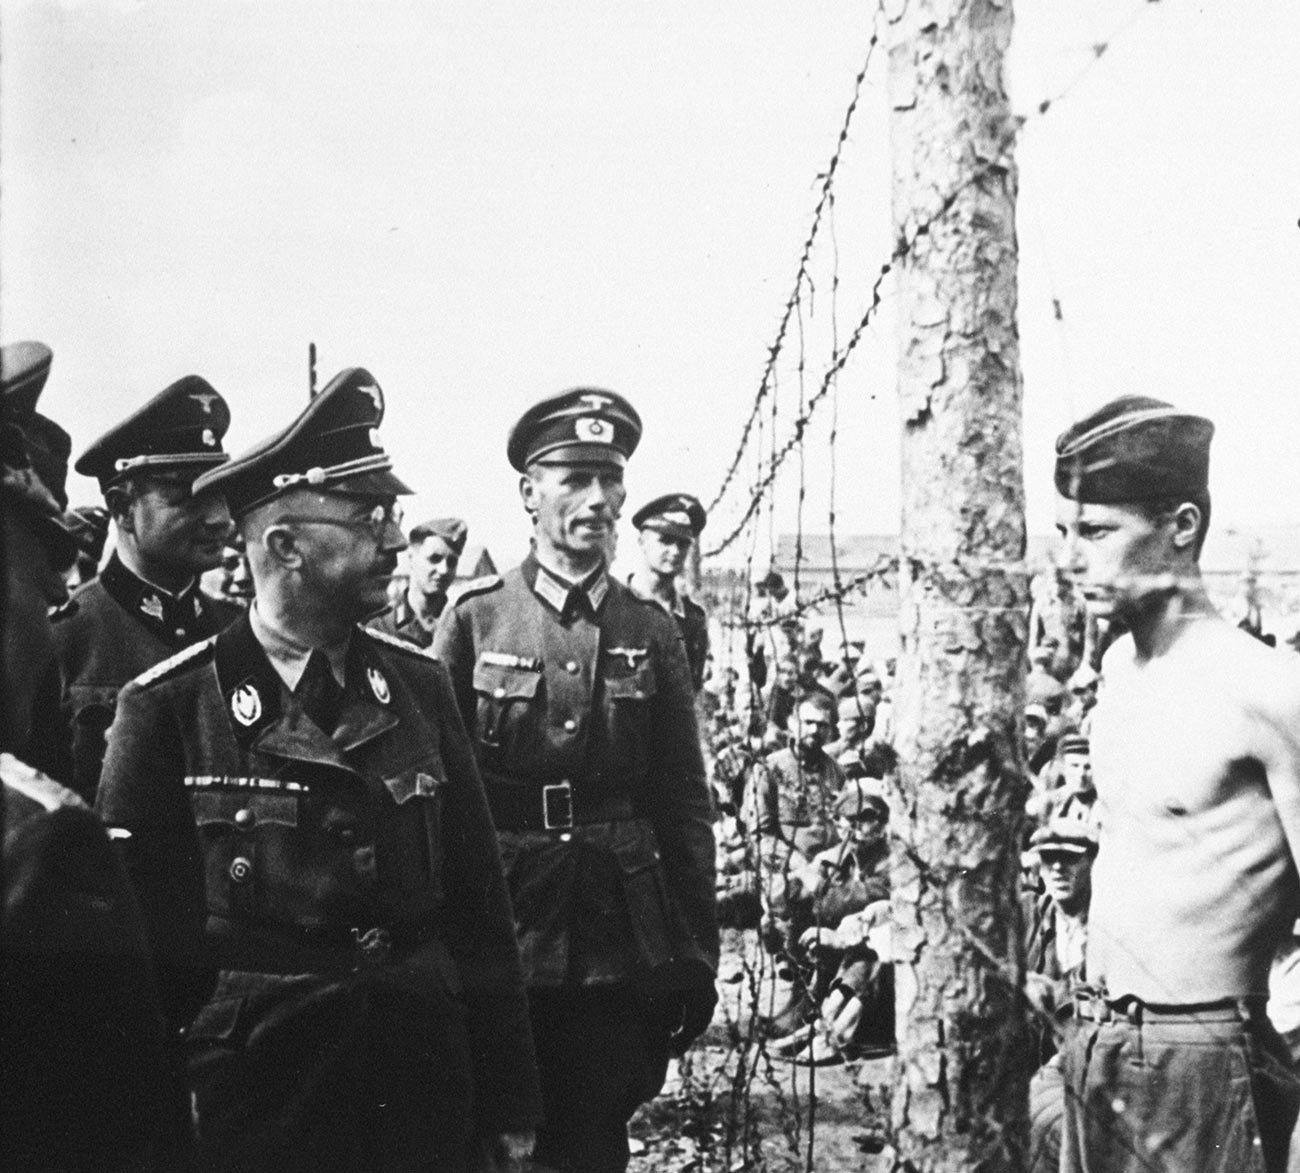 Reichsführer-SS Heinrich Himmler, Chef der Gestapo und der Waffen-SS, inspiziert ein Gefangenenlager in der Sowjetunion im August 1941.